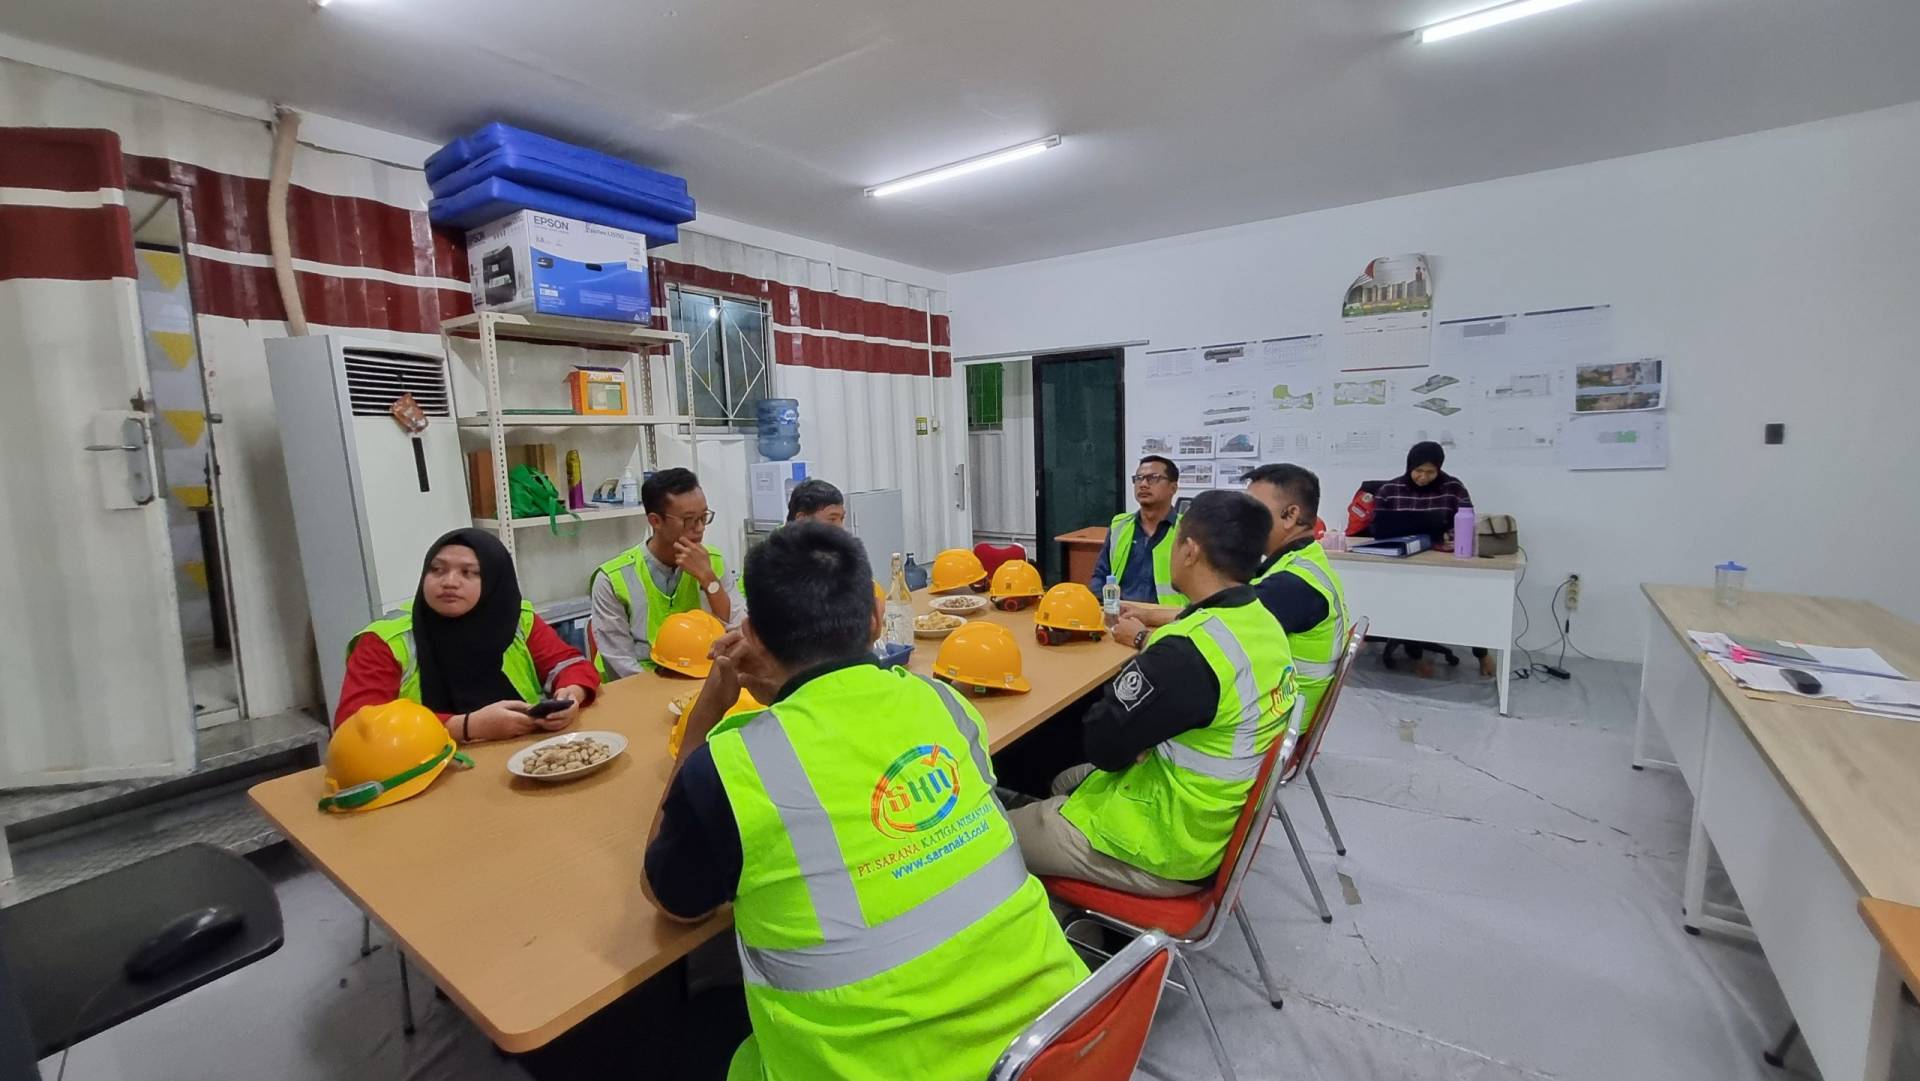 Lokasi Workshop K3 Umum Bnsp Di Flores Timur Nusa Tenggara Timur - Lokasi Workshop K3 Umum Bnsp Di Flores Timur Nusa Tenggara Timur